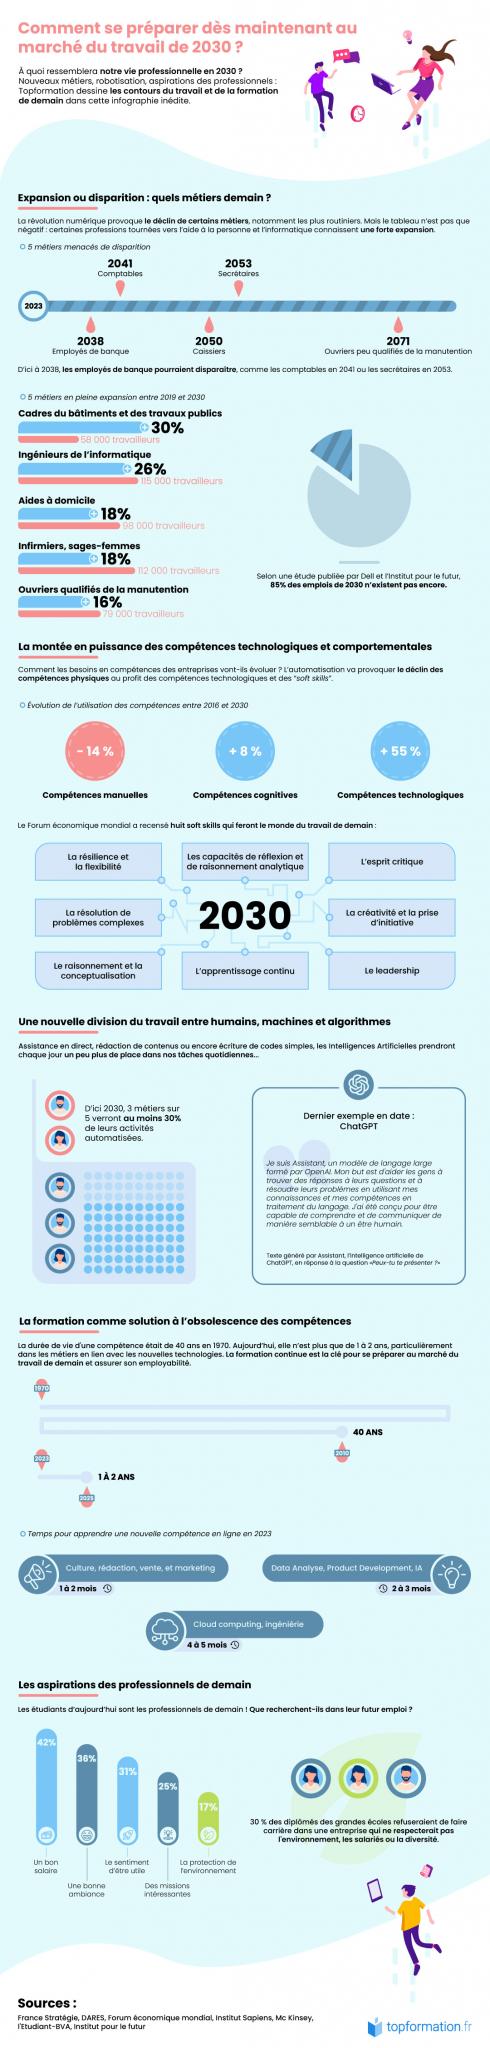 Infographie_metiers_de_2030_Topformation